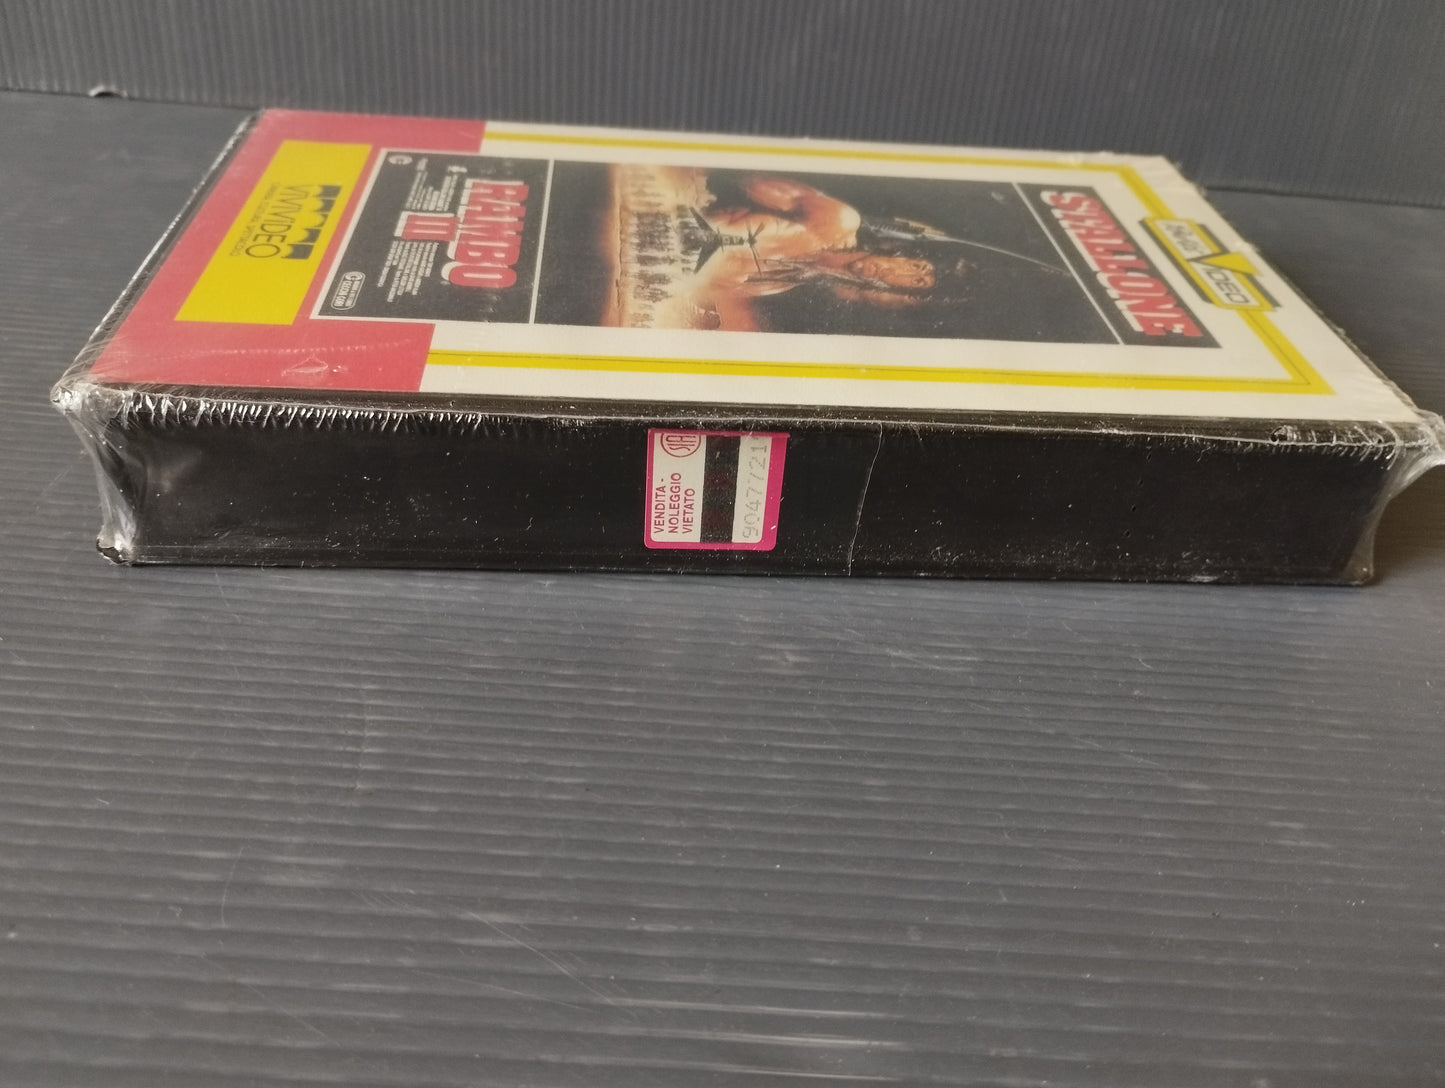 VHS Rambo III Sigillata